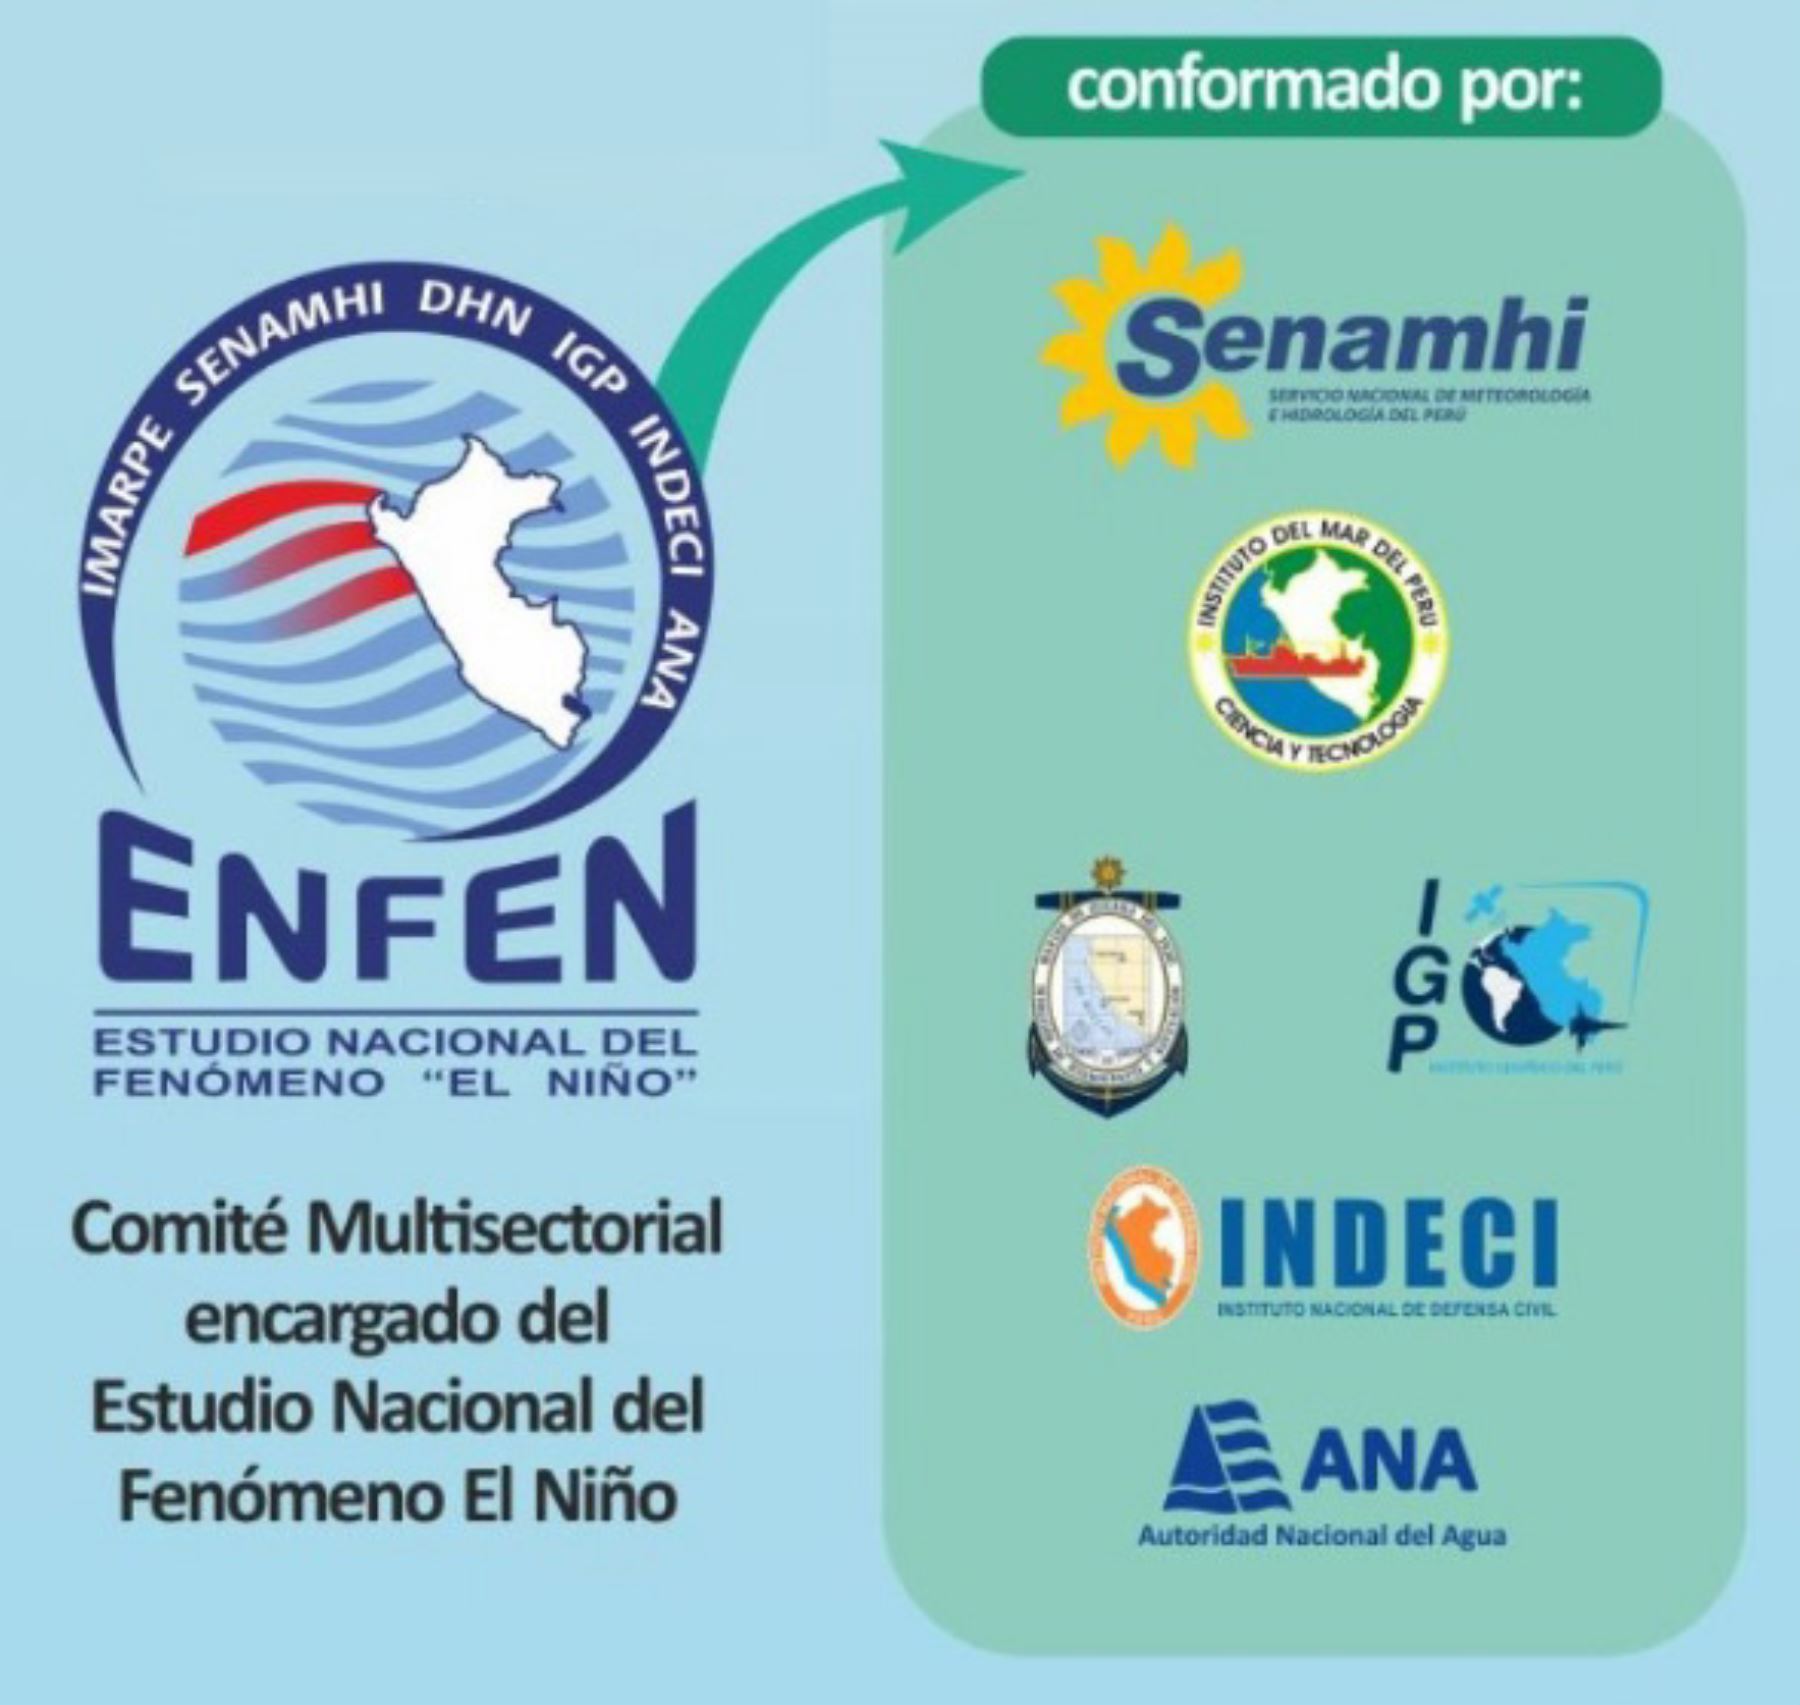 El Enfen advierte que se espera la llegada de una onda Kelvin fría entre setiembre y octubre, que podría disminuir ligeramente la temperatura del mar y aire en la costa peruana. ANDINA/Difusión